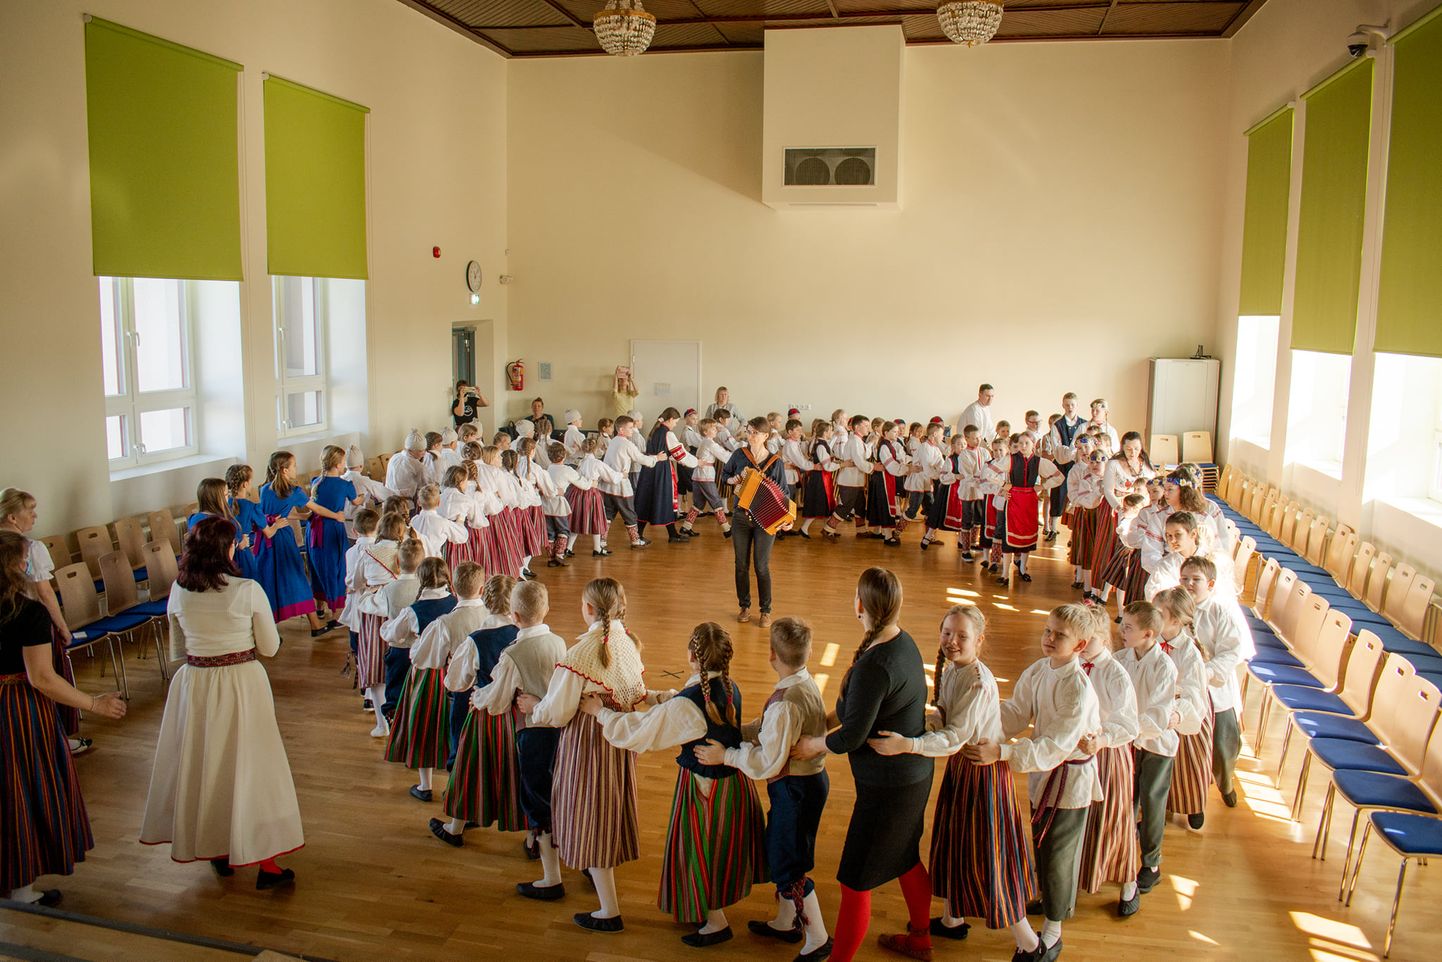 Võru maakonna laste folklooripäev toimus seekord 25. märtsil Võru Kesklinna koolis.